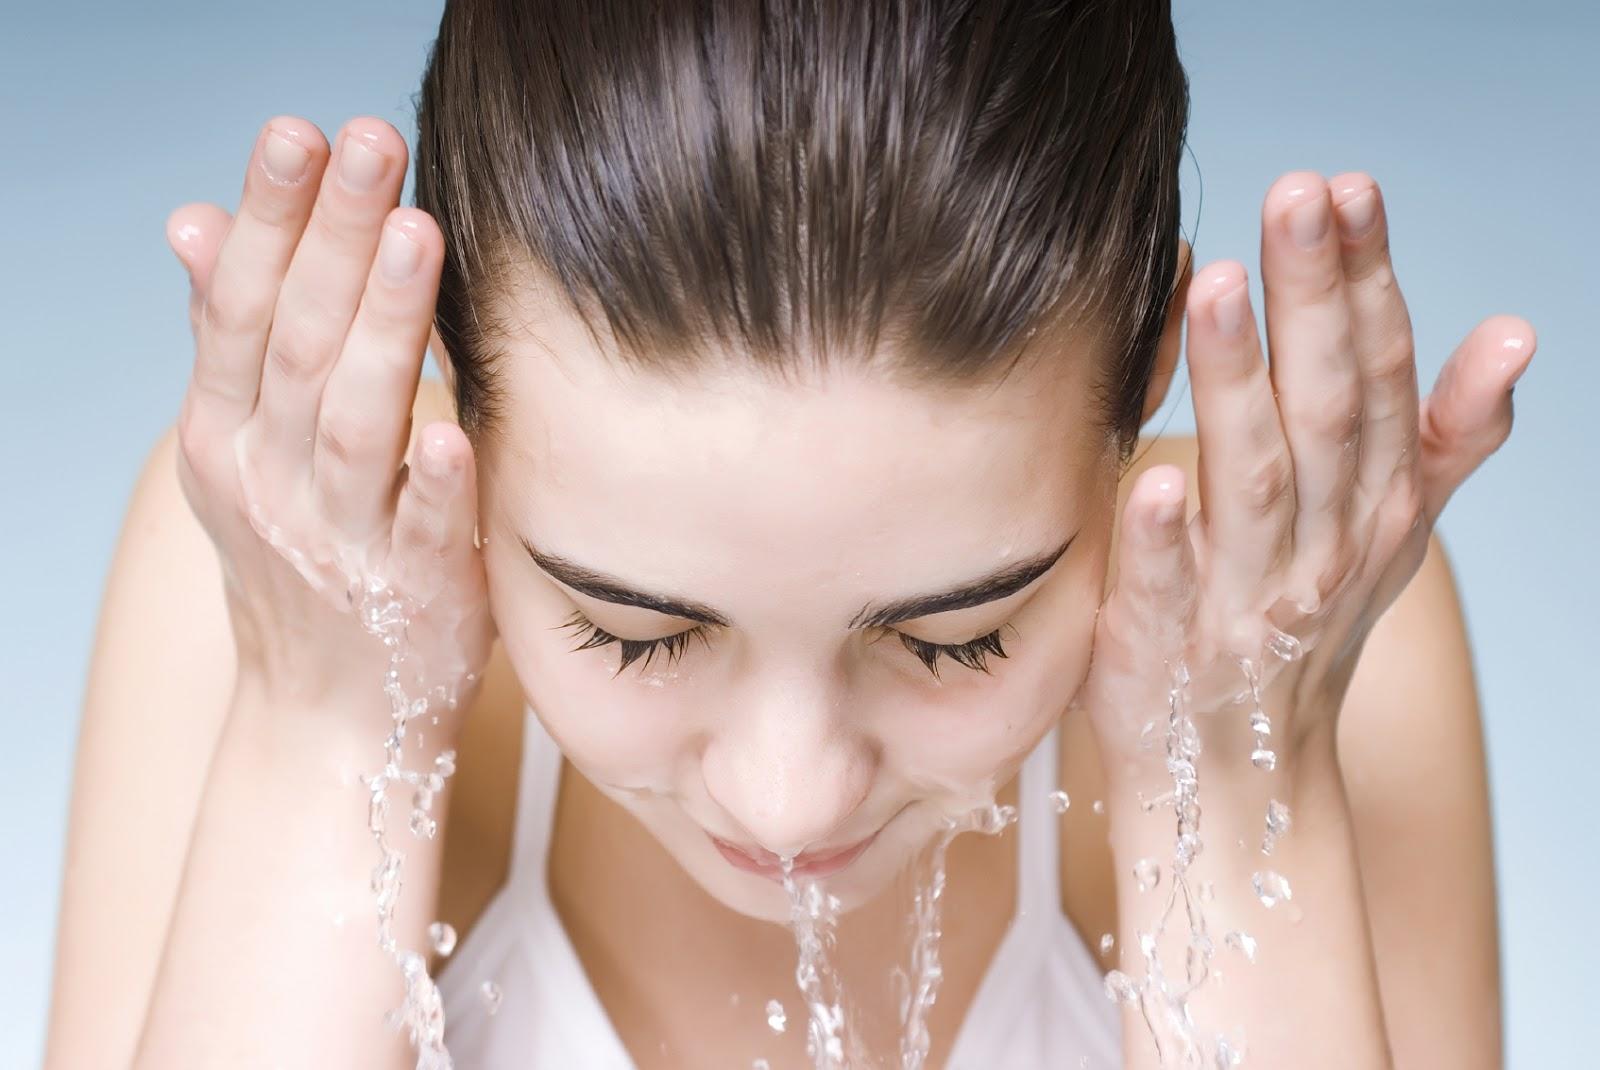 Các chuyên gia khuyên rằng nên rửa mặt trước khi đắp mặt nạ